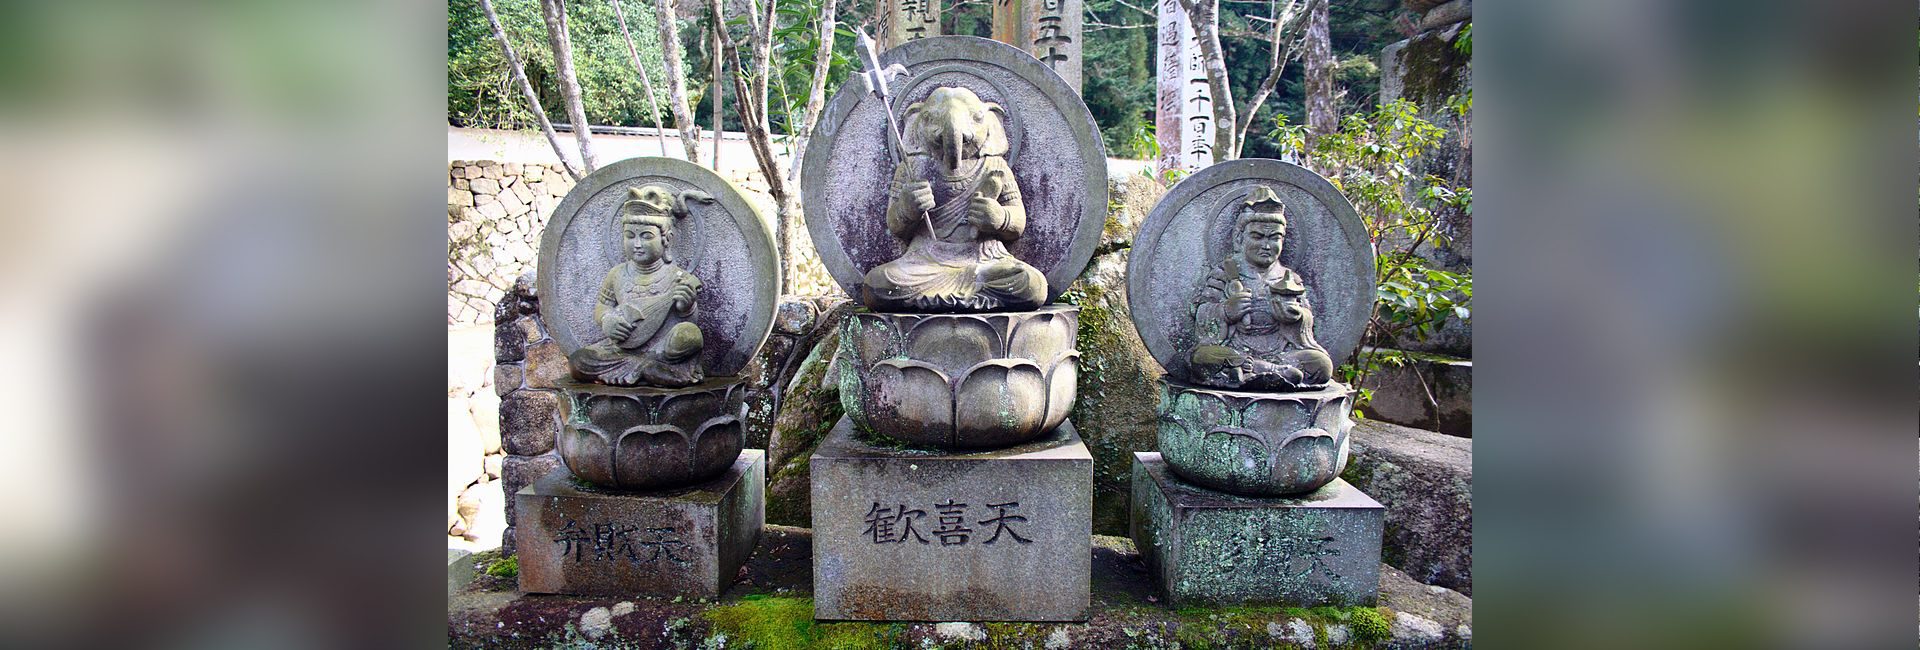 De Aziatische God: het spoor volgen van Lord Ganesha